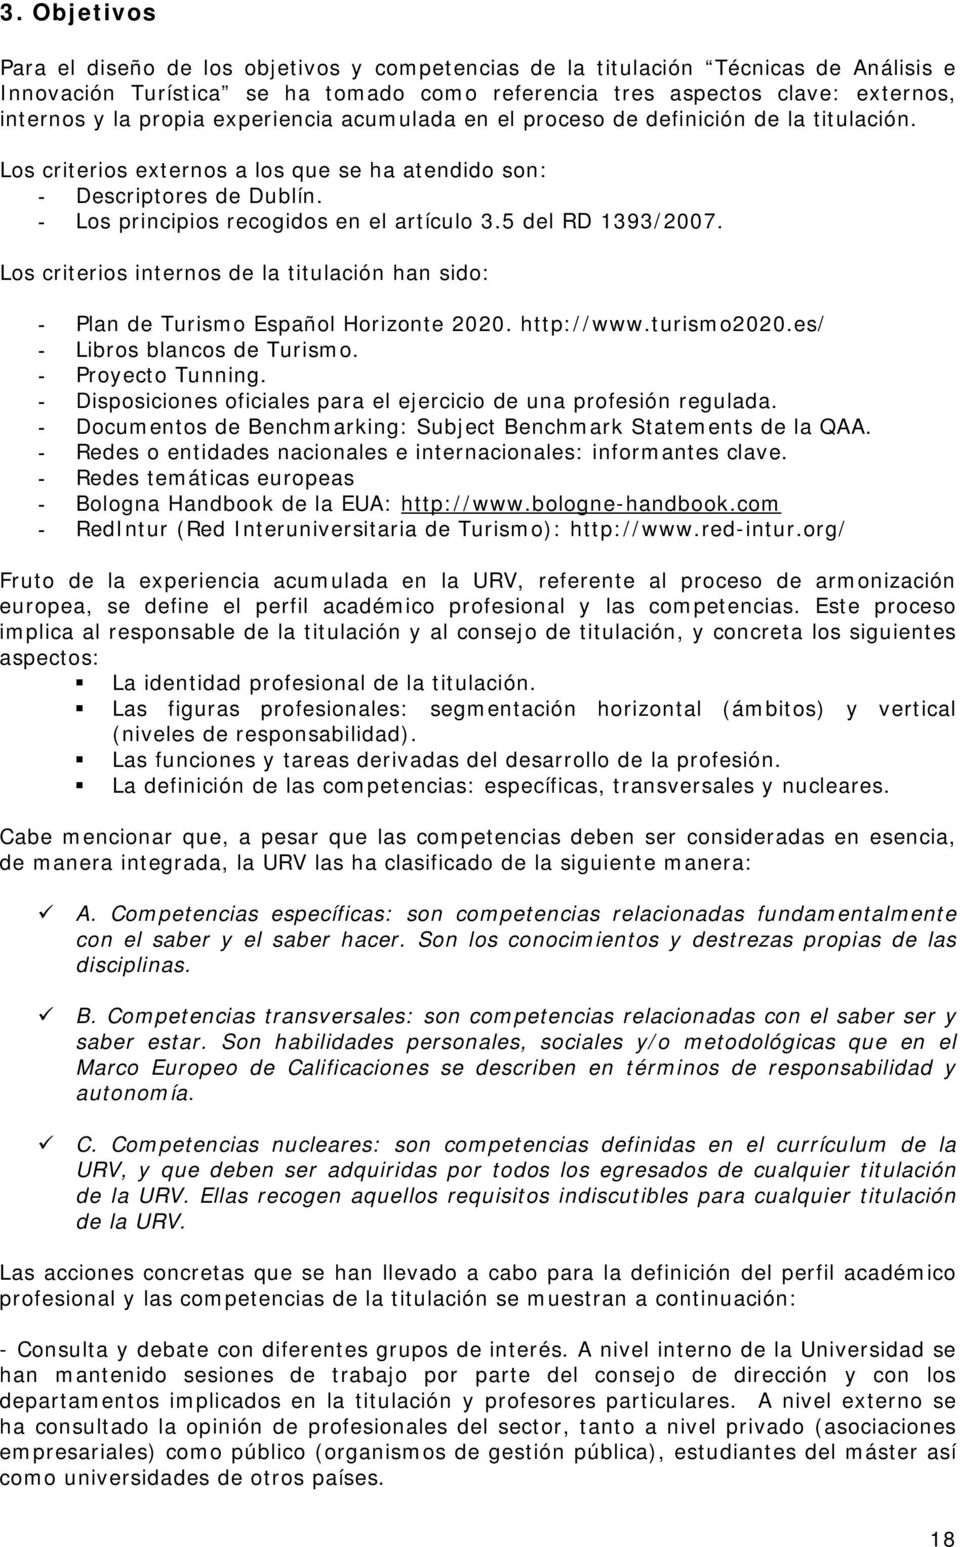 5 del RD 1393/2007. Los criterios internos de la titulación han sido: - Plan de Turismo Español Horizonte 2020. http://www.turismo2020.es/ - Libros blancos de Turismo. - Proyecto Tunning.